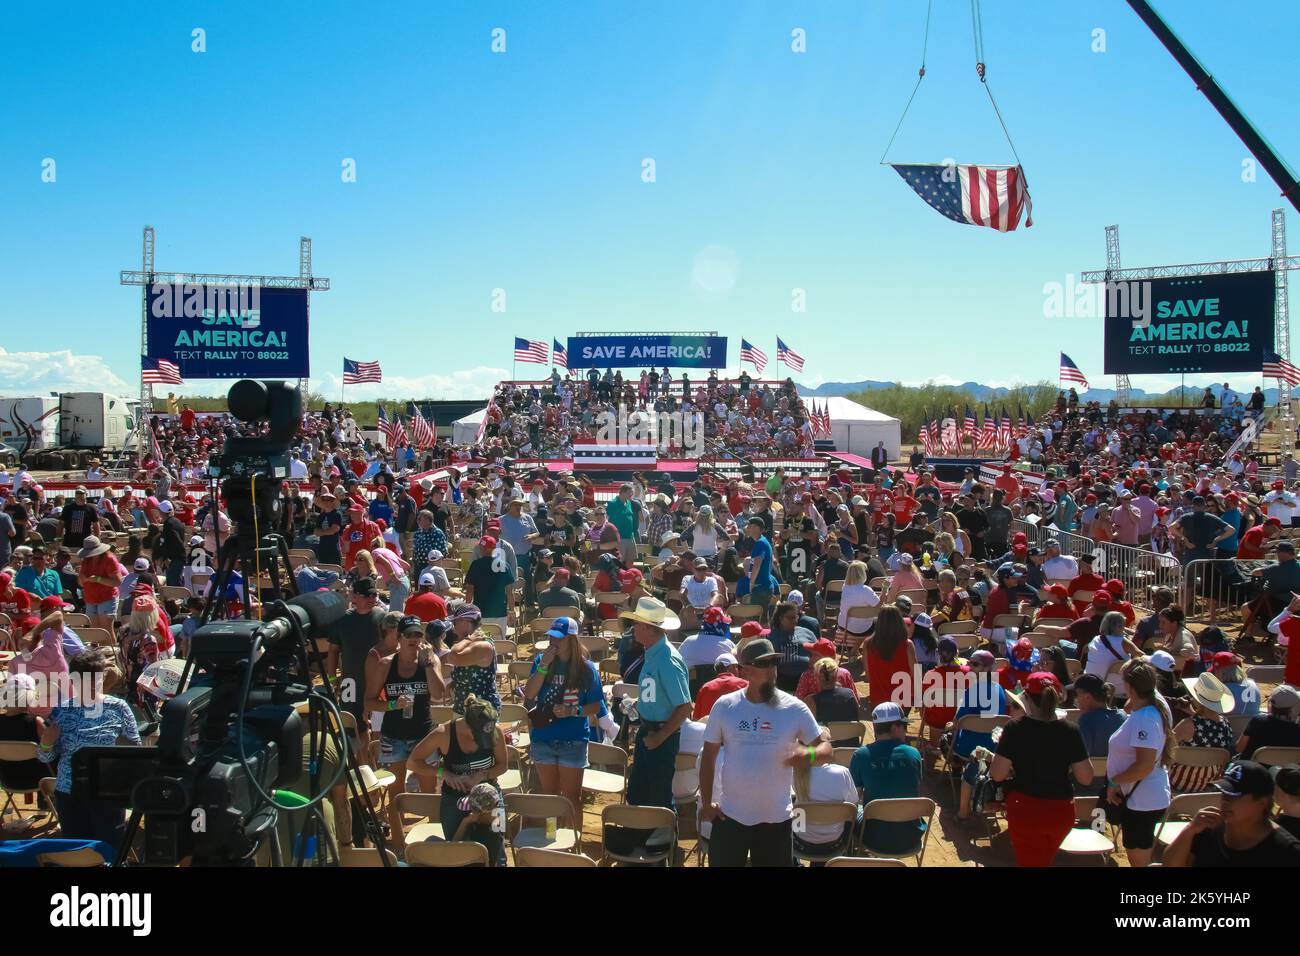 Riesige Kundgebung in Mesa, Arizona, während viele Republikaner in Arizona den ganzen Morgen warten, um ihre republikanischen Kandidaten auf der Bühne zu treffen. Stockfoto